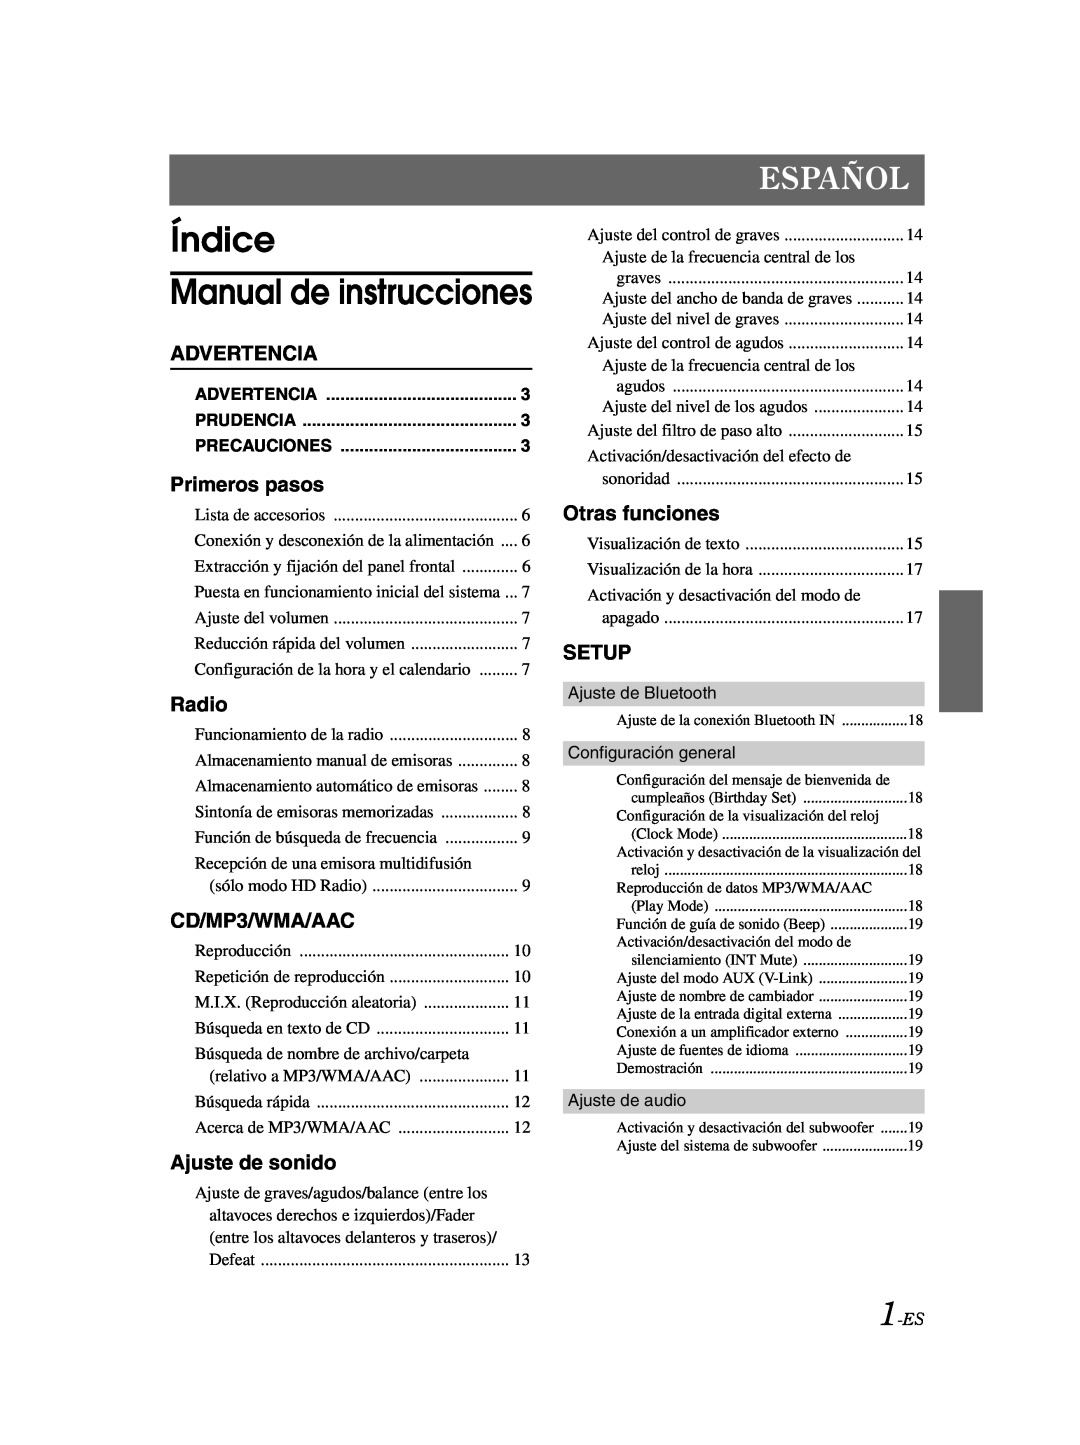 Alpine CDA-9885 Índice Manual de instrucciones, Español, Advertencia, Primeros pasos, Ajuste de sonido, Otras funciones 